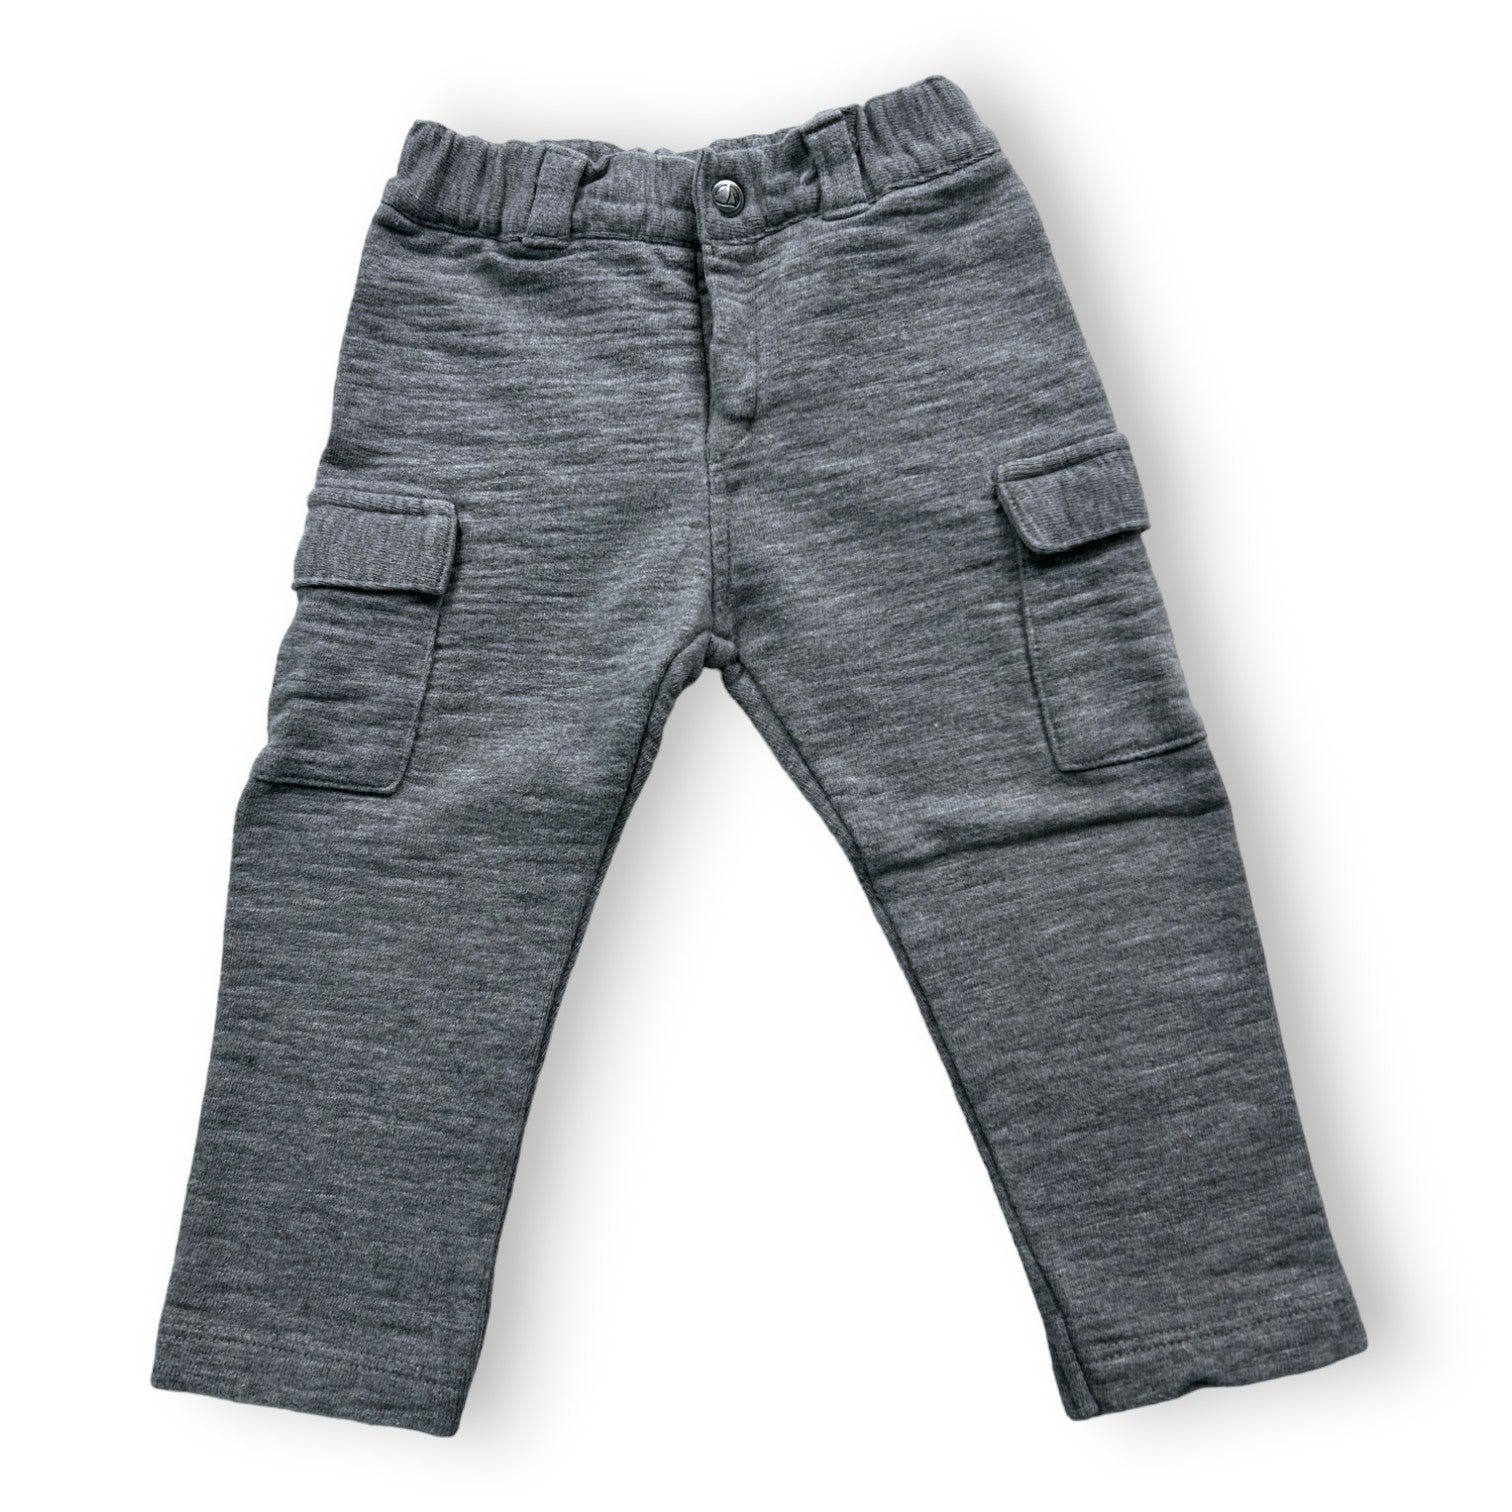 PETIT BATEAU - Pantalon gris en molleton  - 18 mois